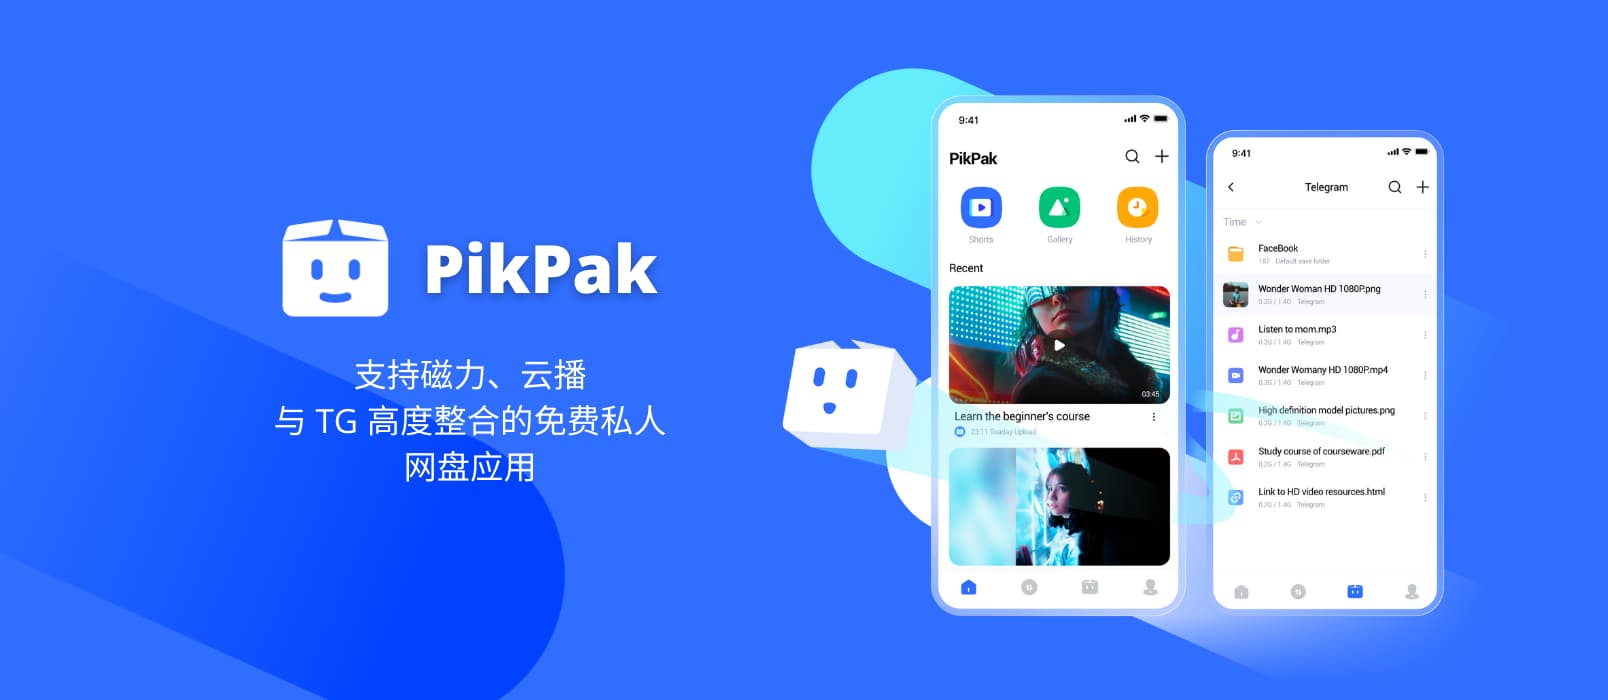 PikPak - 支持磁力、云播，与 TG 高度整合的免费私人网盘应用[Android]